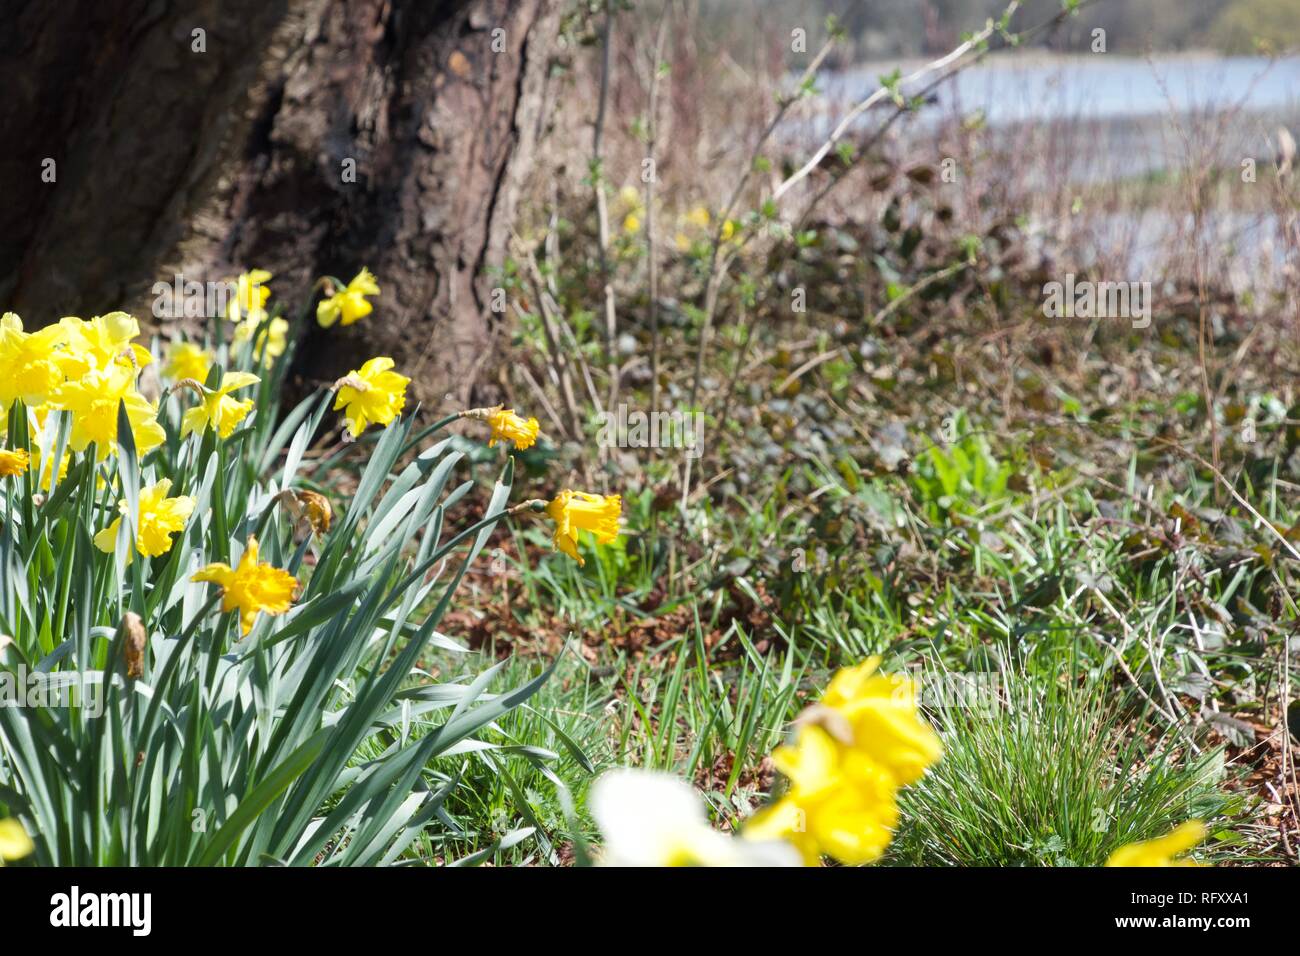 Ein Patch der gelben Narzissen auf grünen Stengel im Frühling, wachsen auf einer Bank unter einem Baum und in der Nähe von einem See Stockfoto